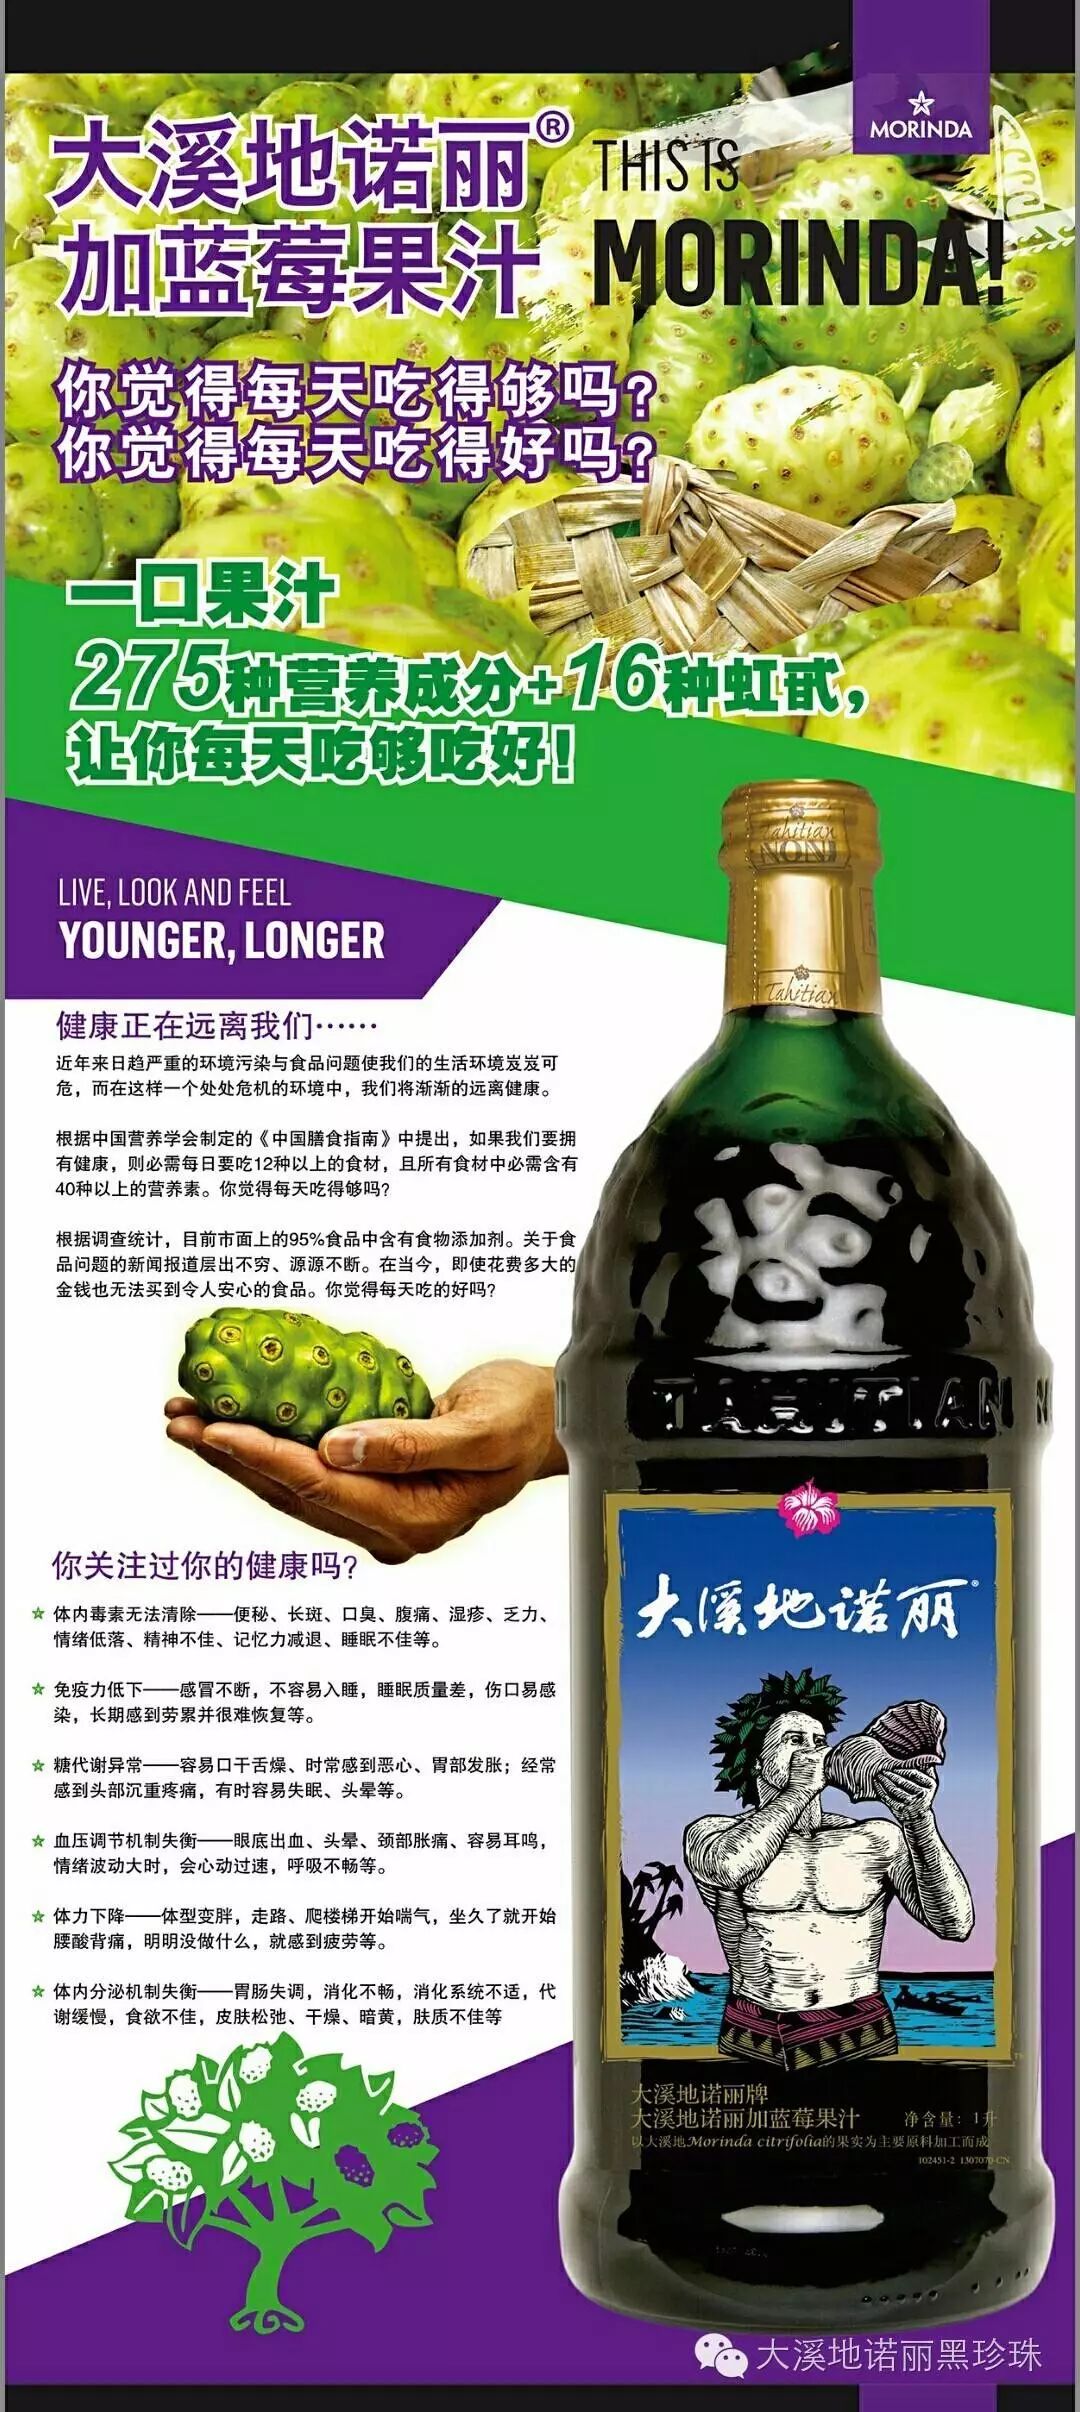 产品介绍大溪地诺丽经典款加蓝莓果汁